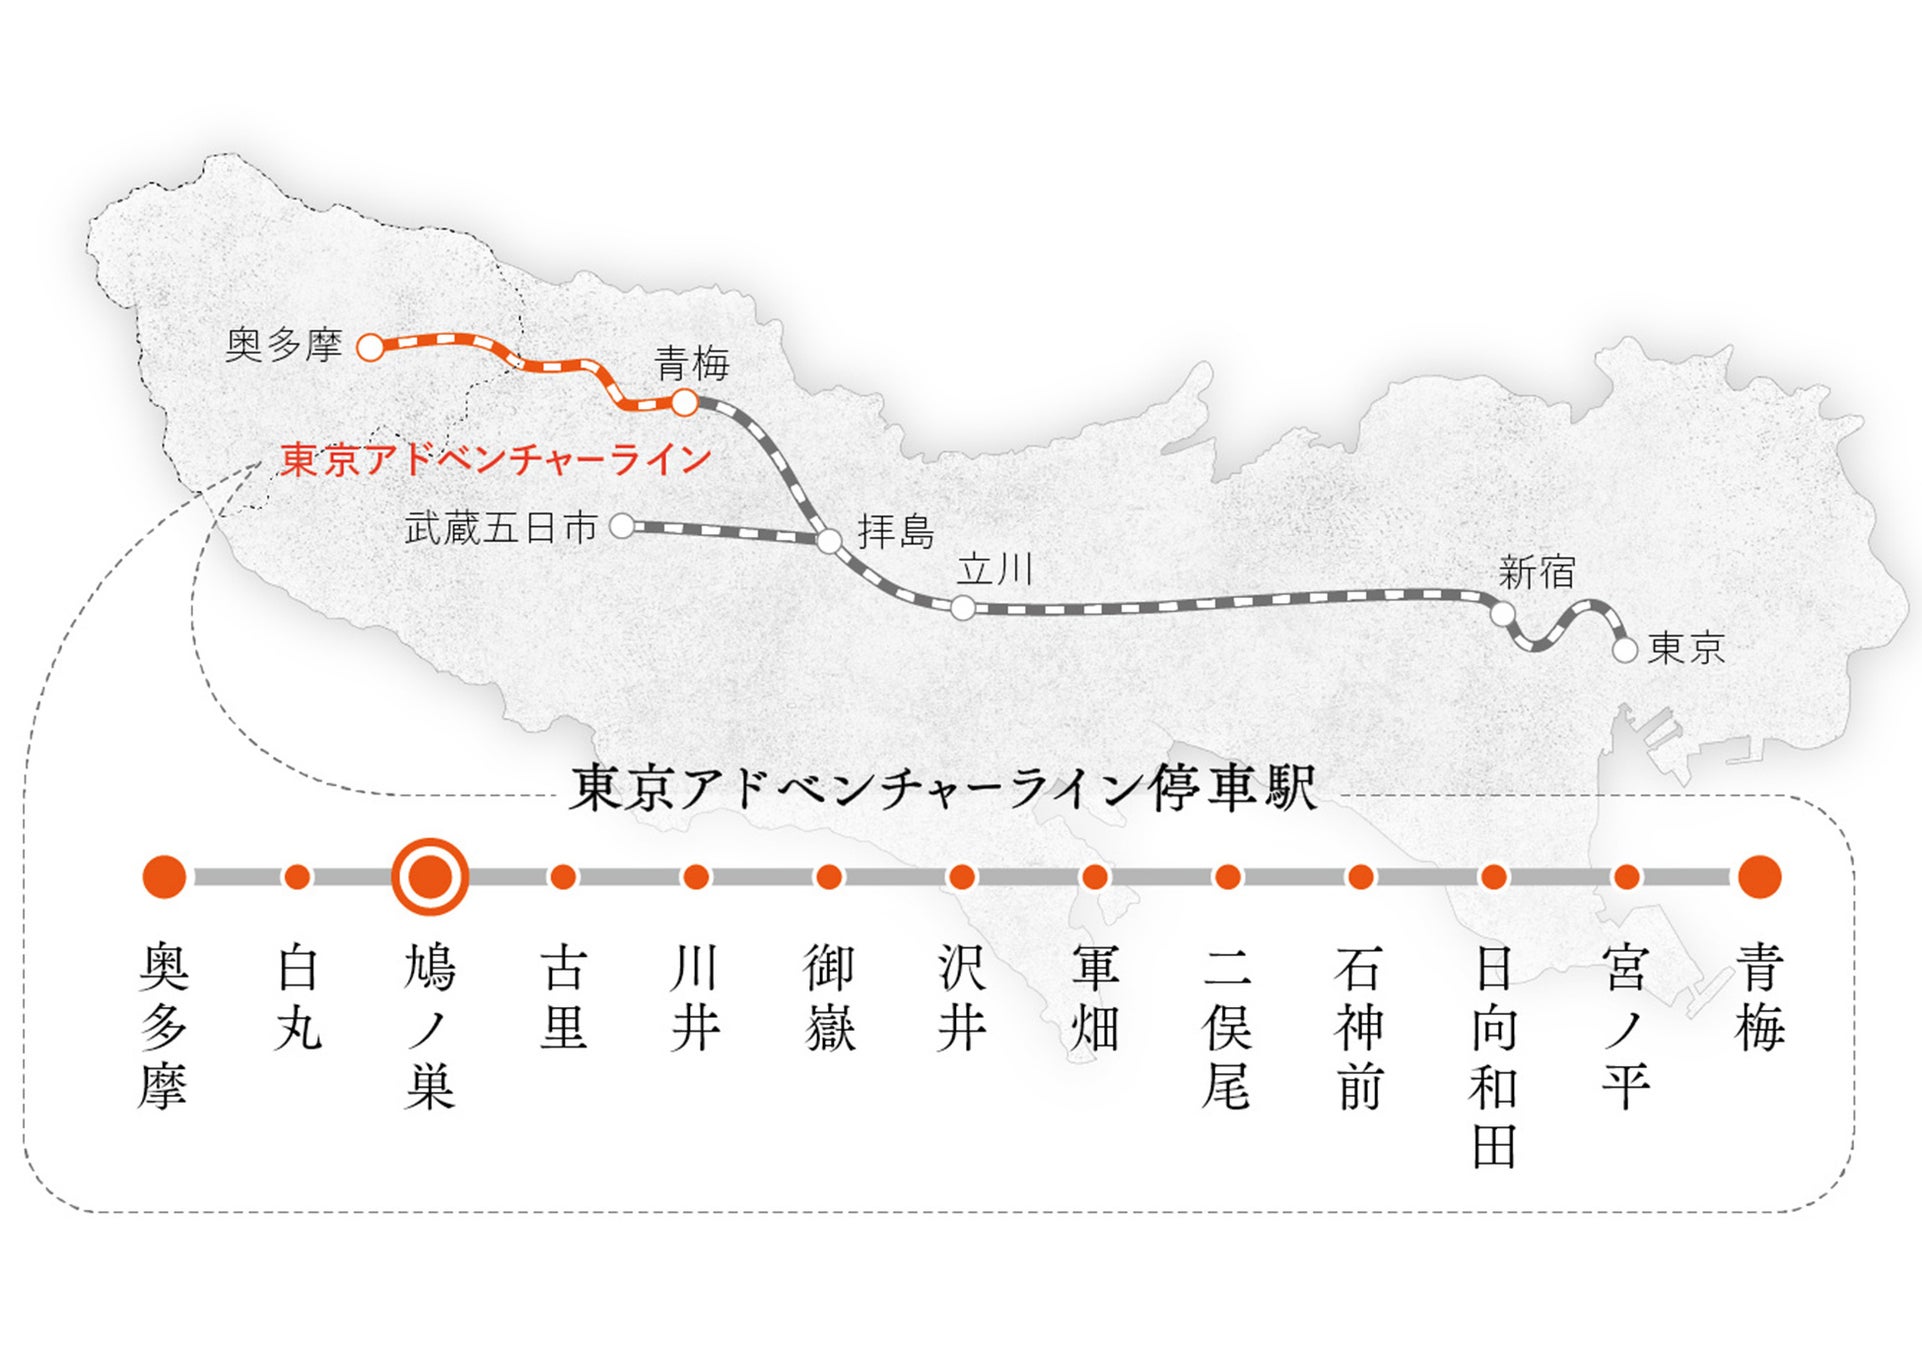 図 ：「沿線まるごとホテル」第一弾の舞台となるJR青梅線「鳩ノ巣駅」